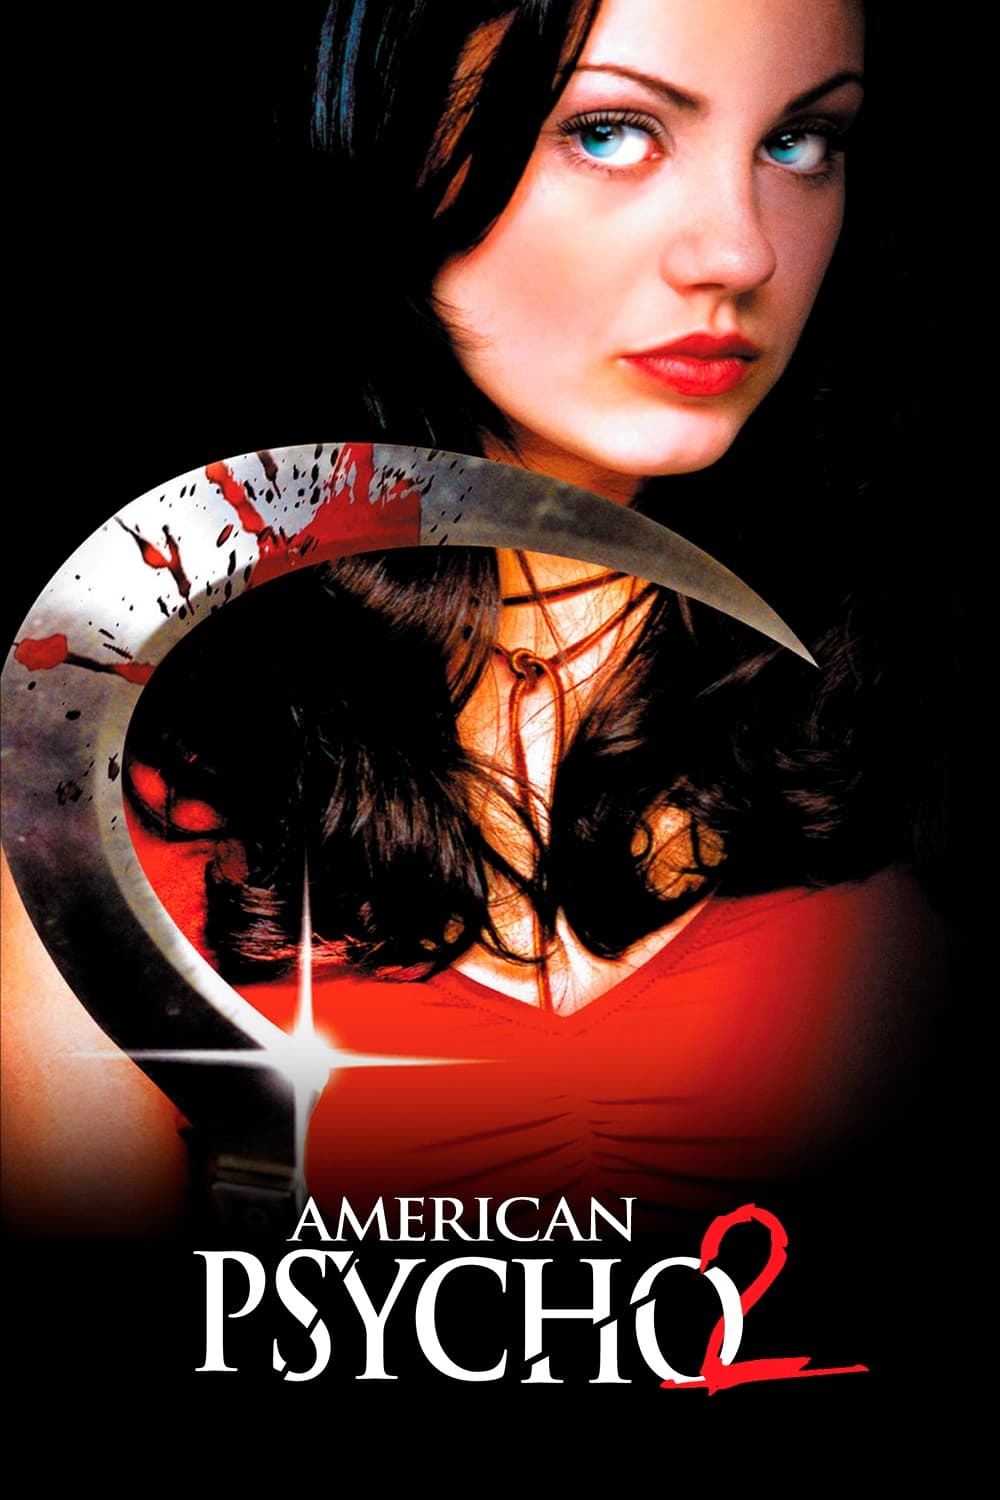 American Psycho II: All American Girl (2002)